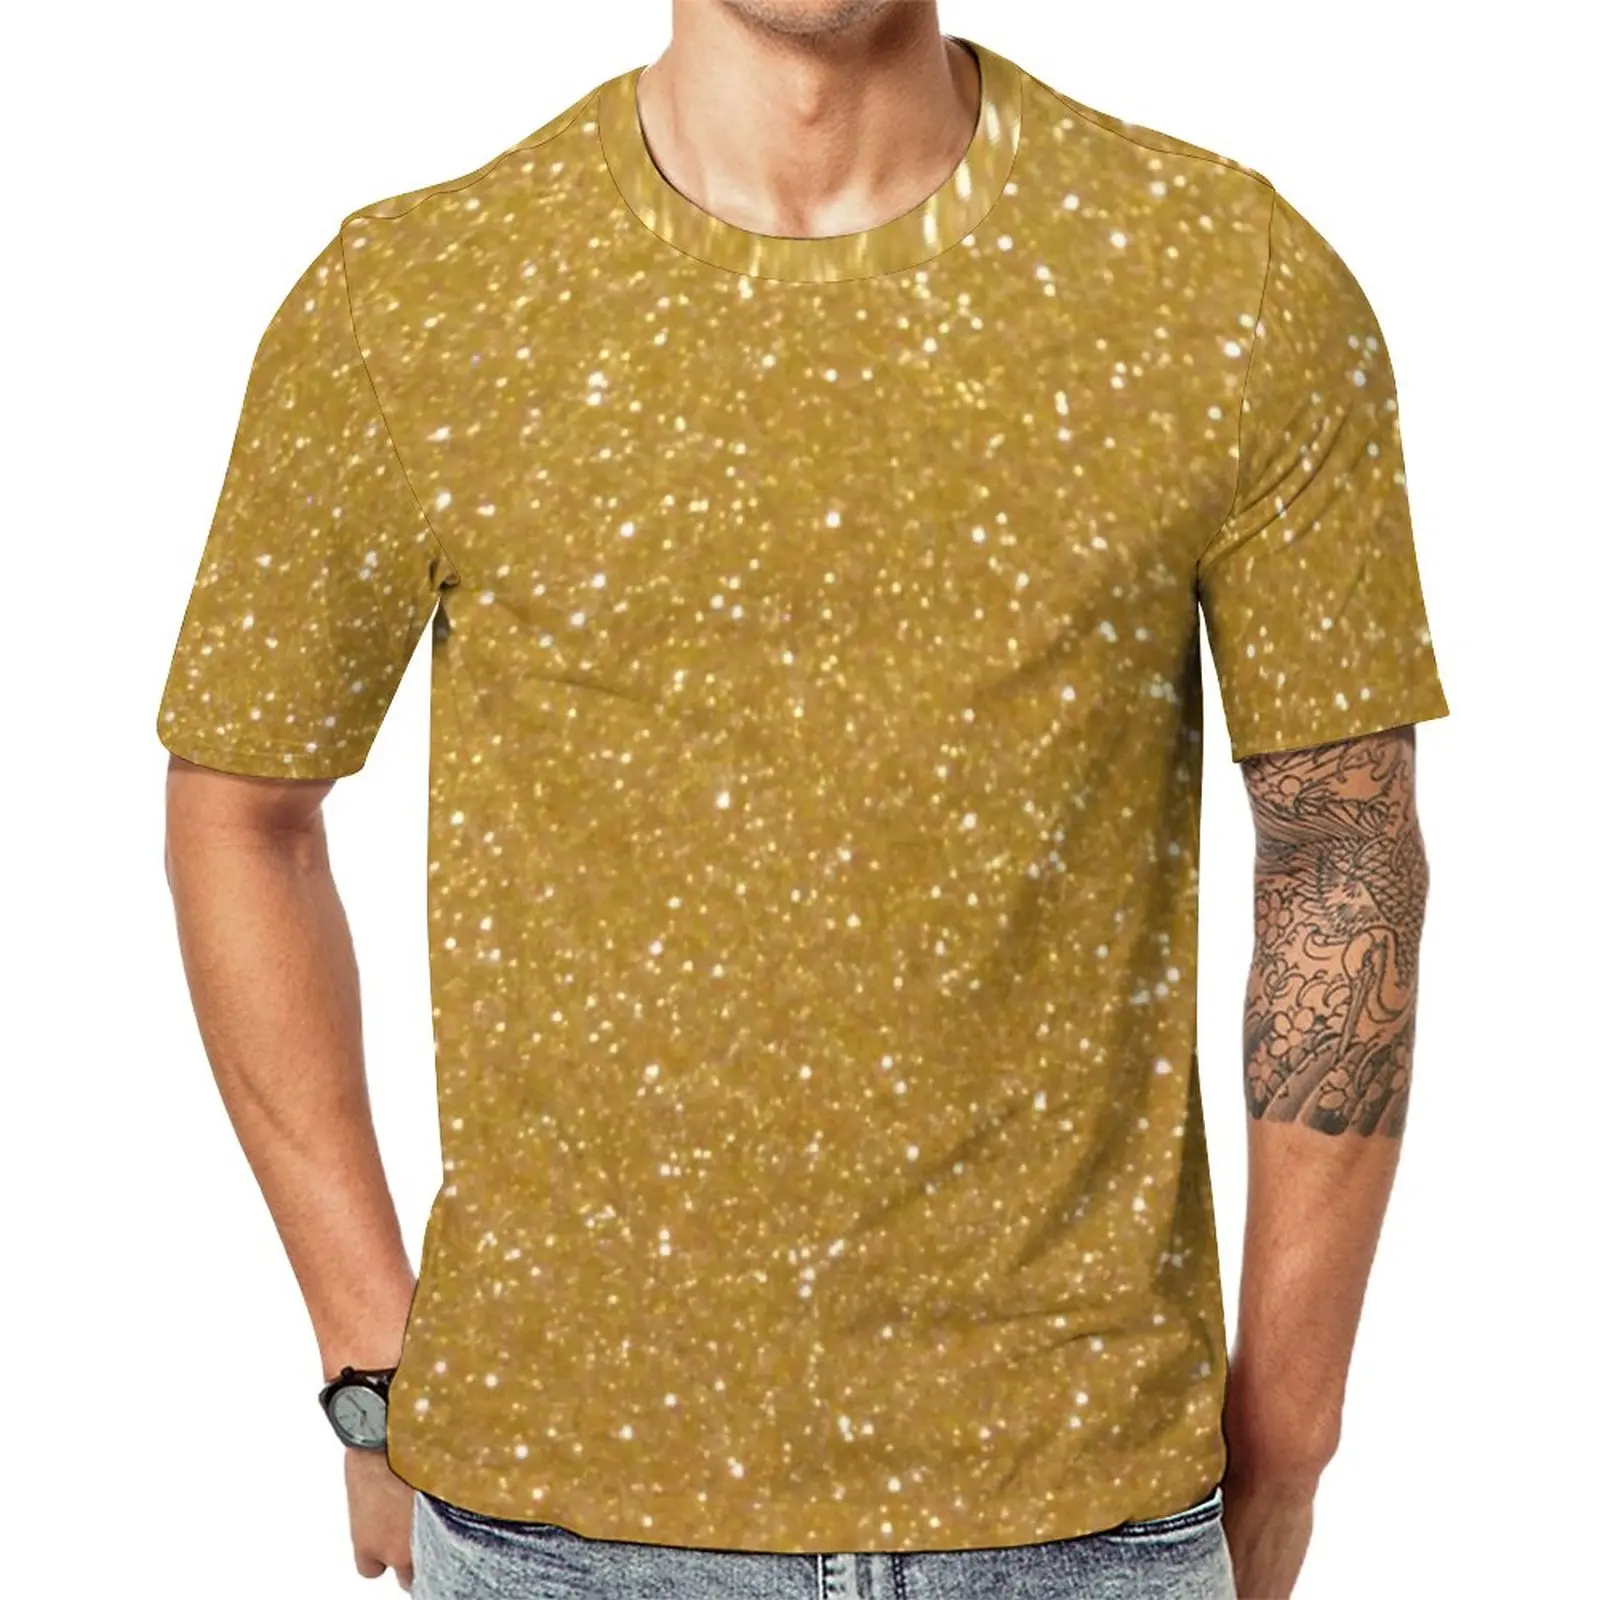 

Футболка из искусственного золота с металлическим блеском, футболки в стиле Харадзюку с блестящим металлическим принтом, футболка с коротким рукавом на заказ, дешевая пляжная одежда большого размера